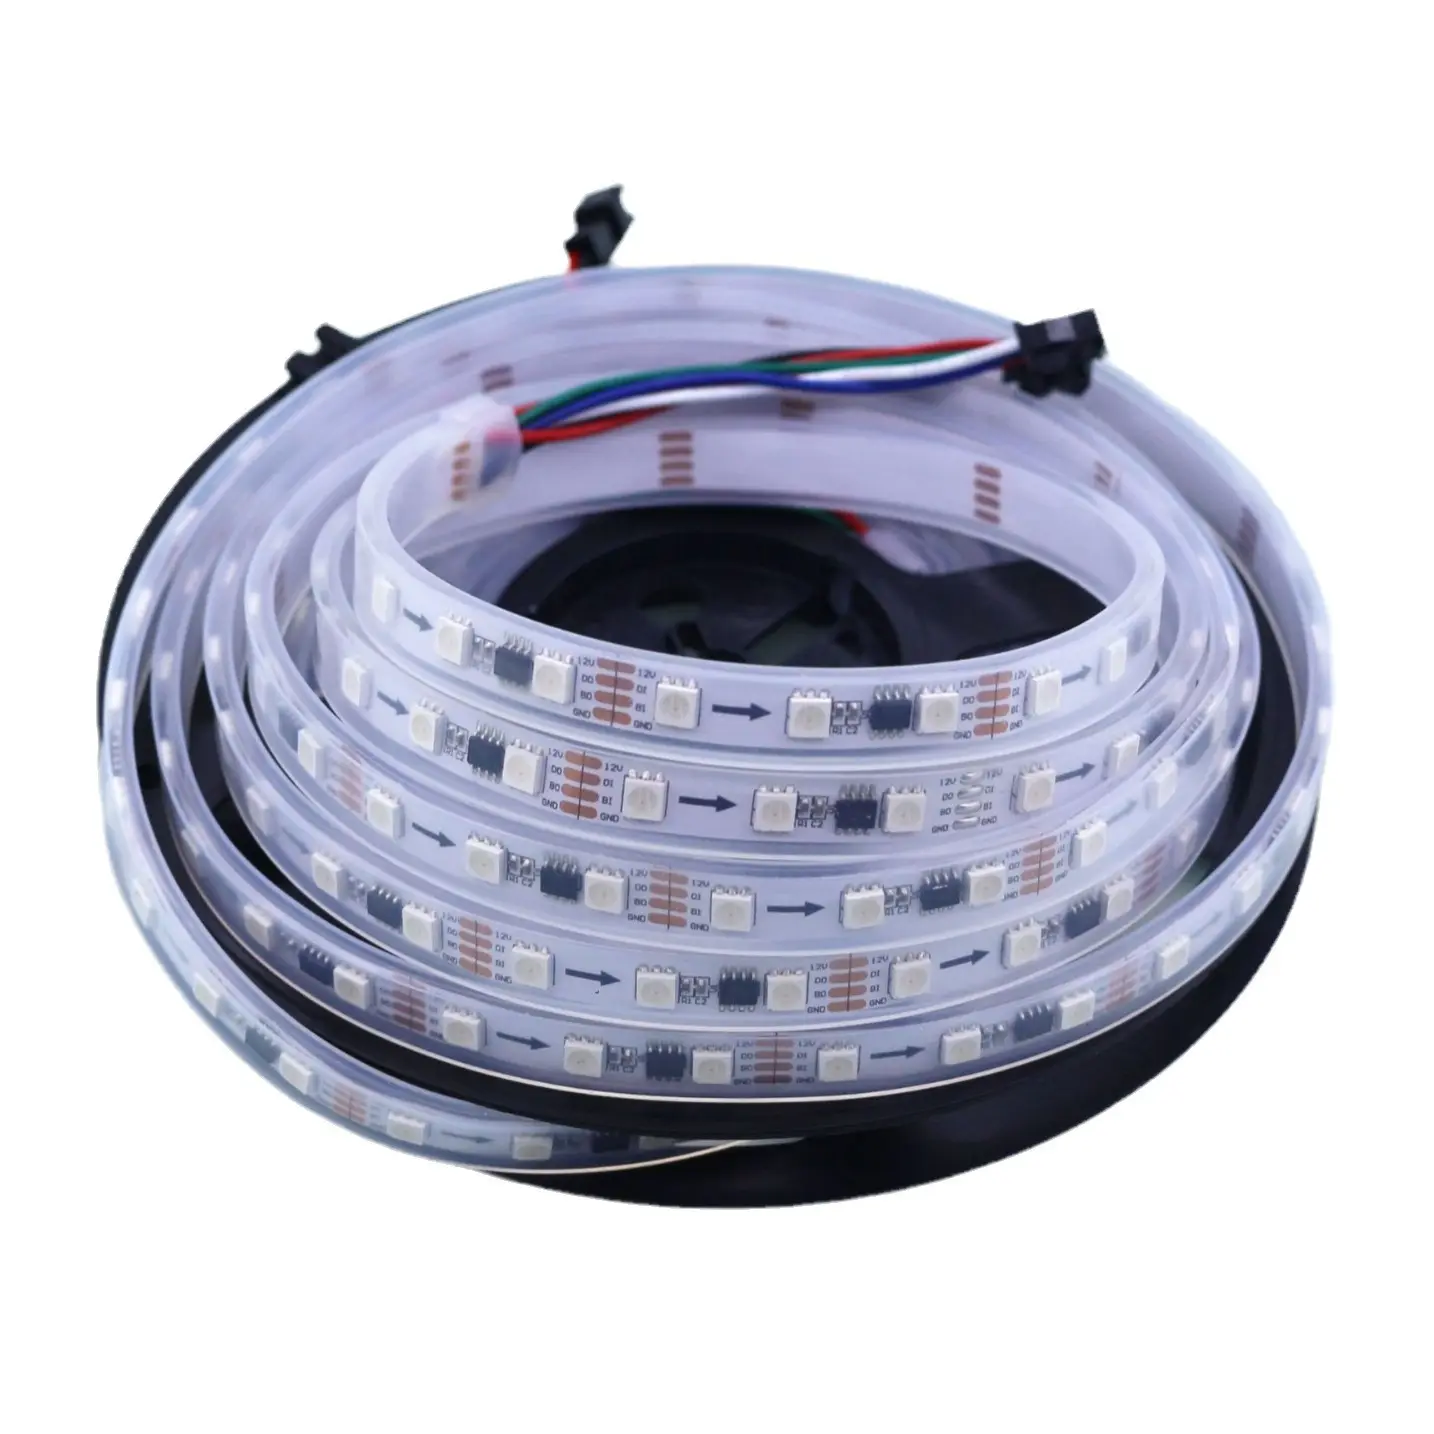 High voltage LED Strip AC100V 110V 120V 220V 230V 240V SMD5050 LED Strip Light 60leds/m 100m per roll LED Tape